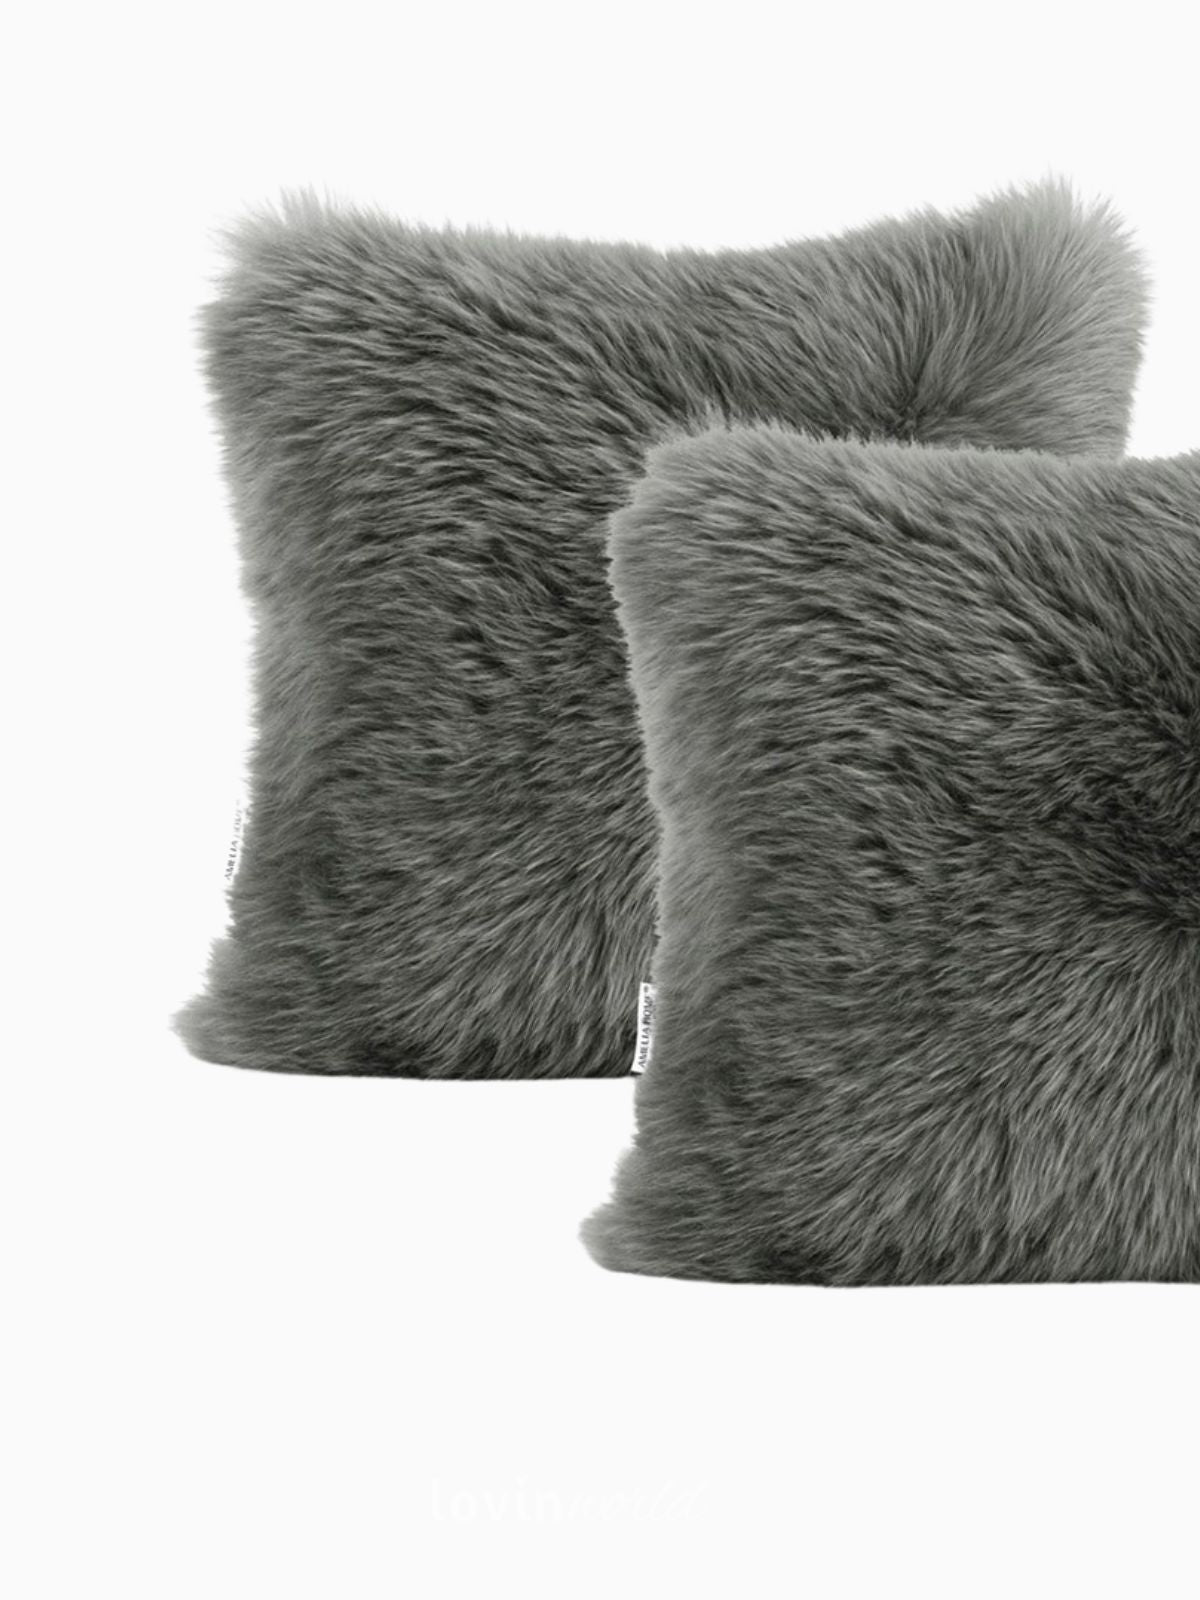 2 Federe per cuscino Dokka in colore grigio scuro 45x45 cm.-4